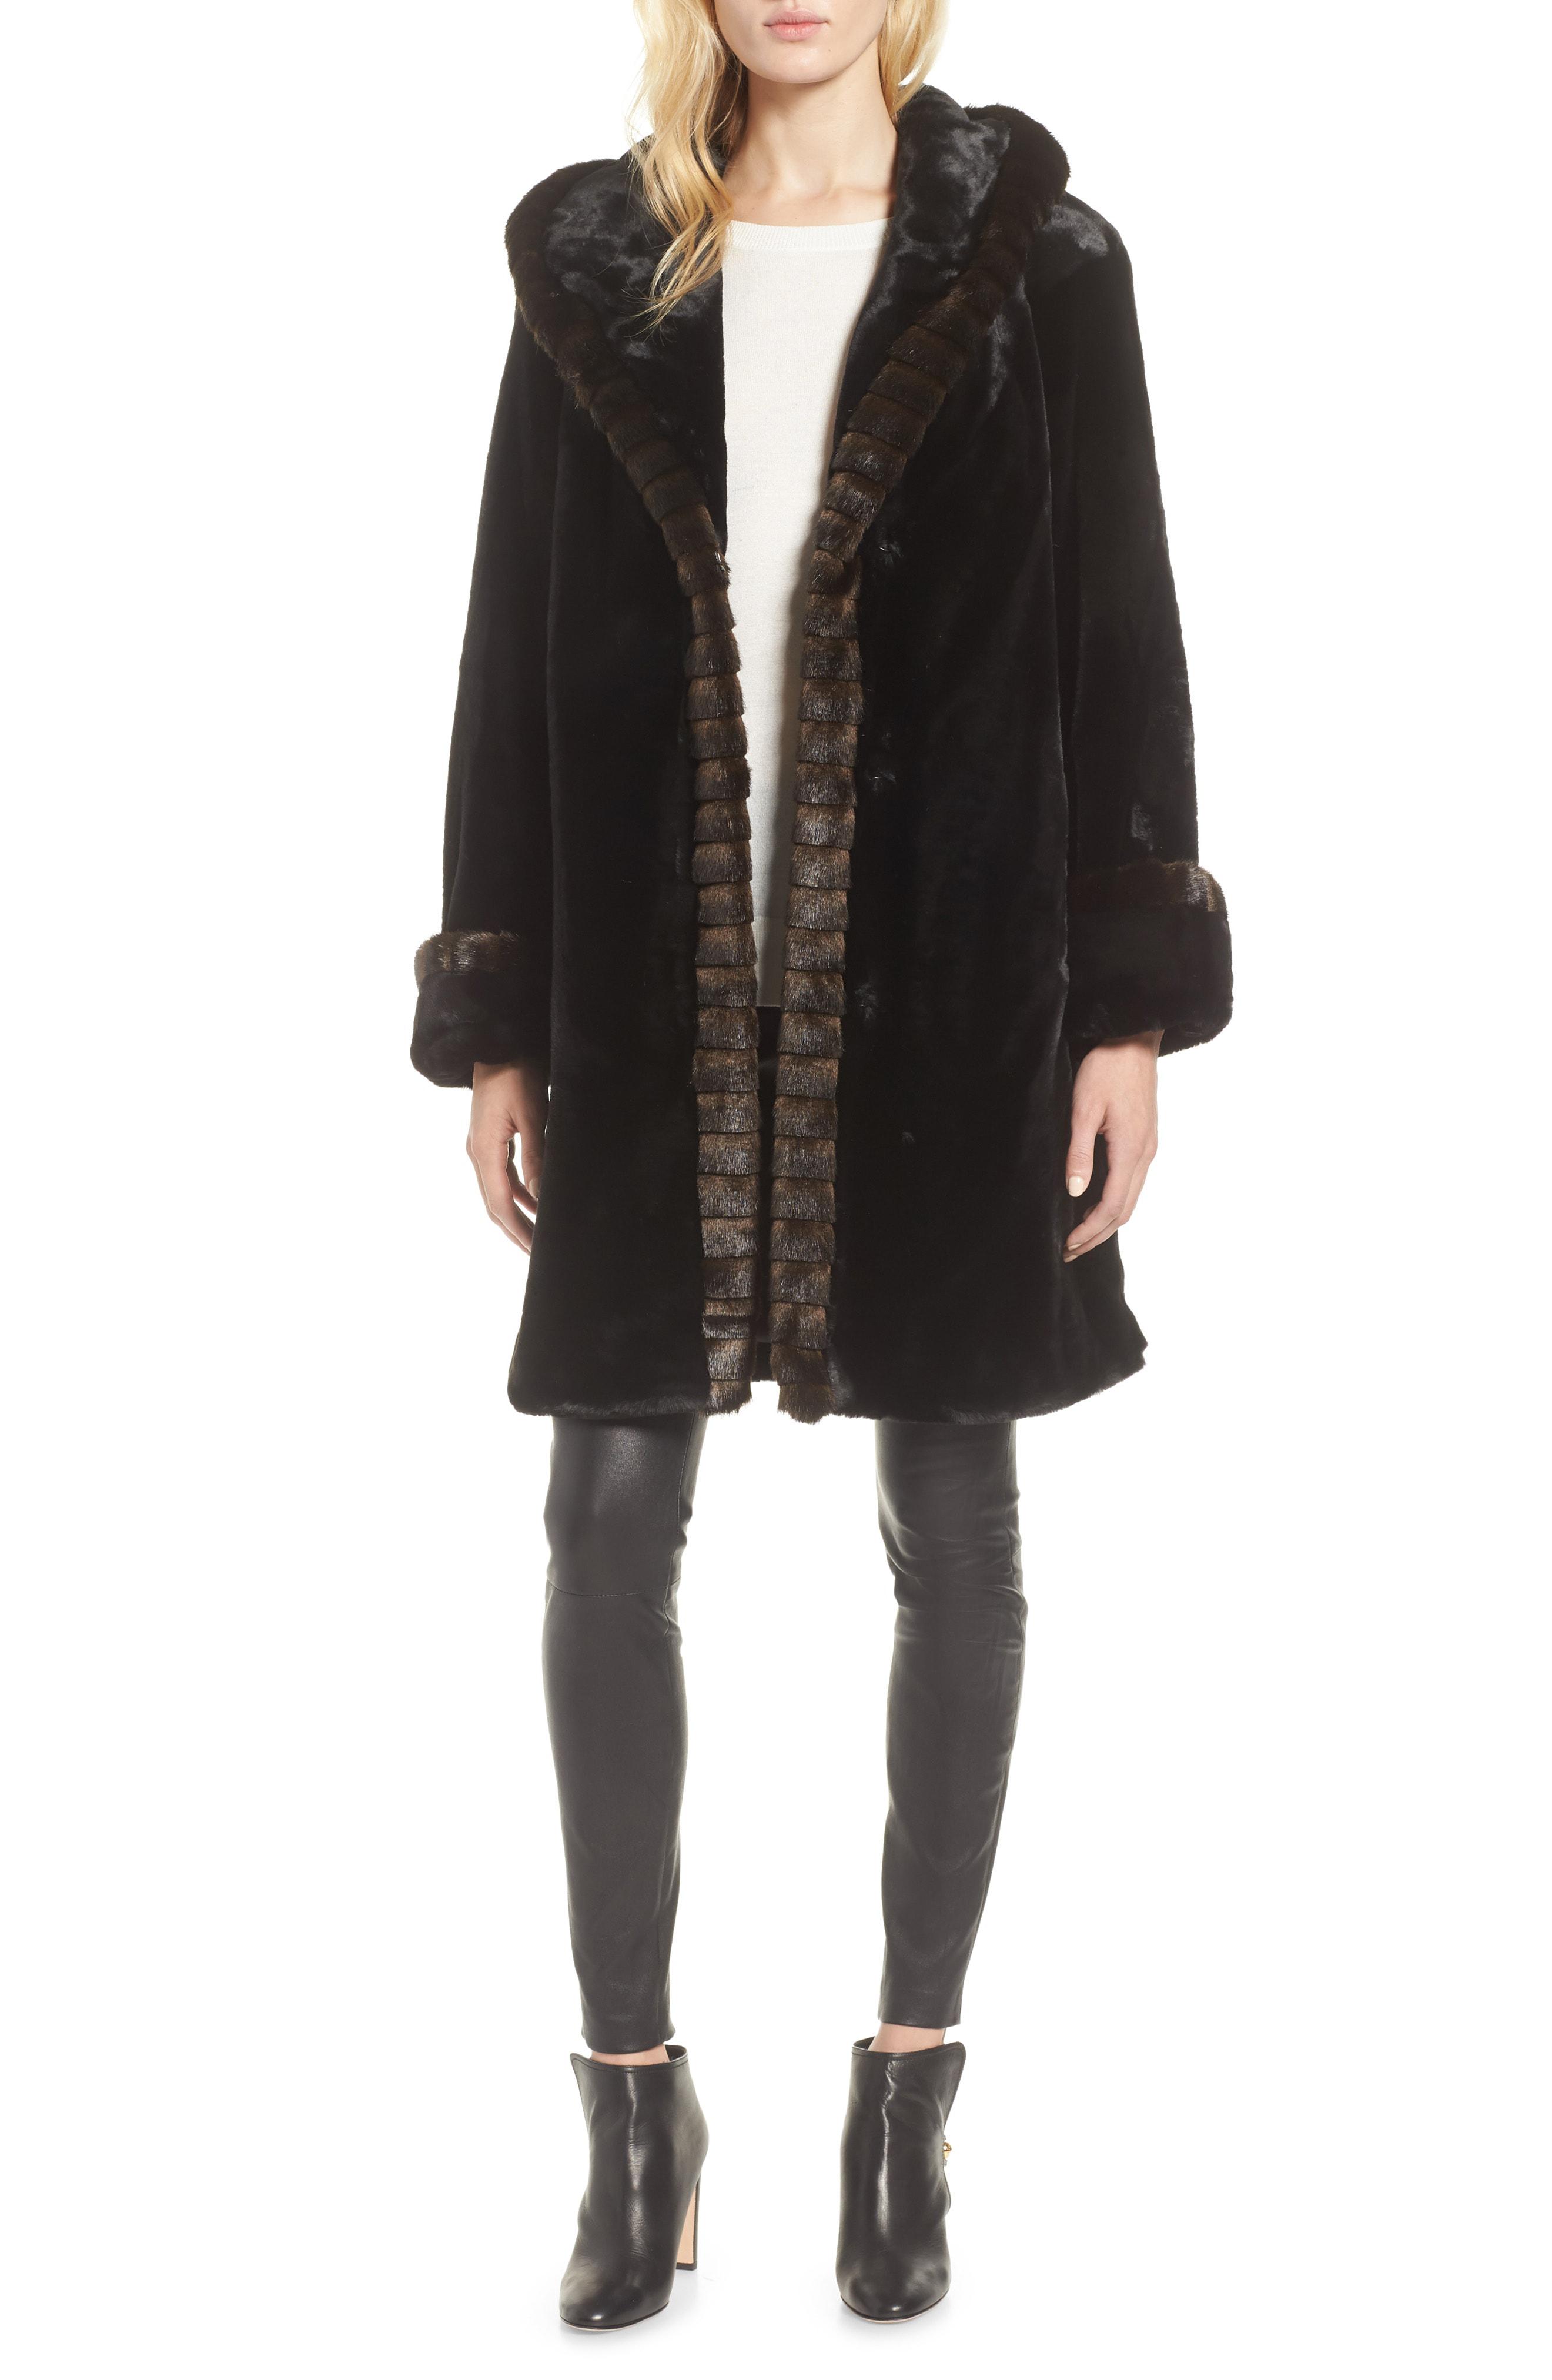 Lyst - Gallery Hooded Faux Fur Walking Coat in Black